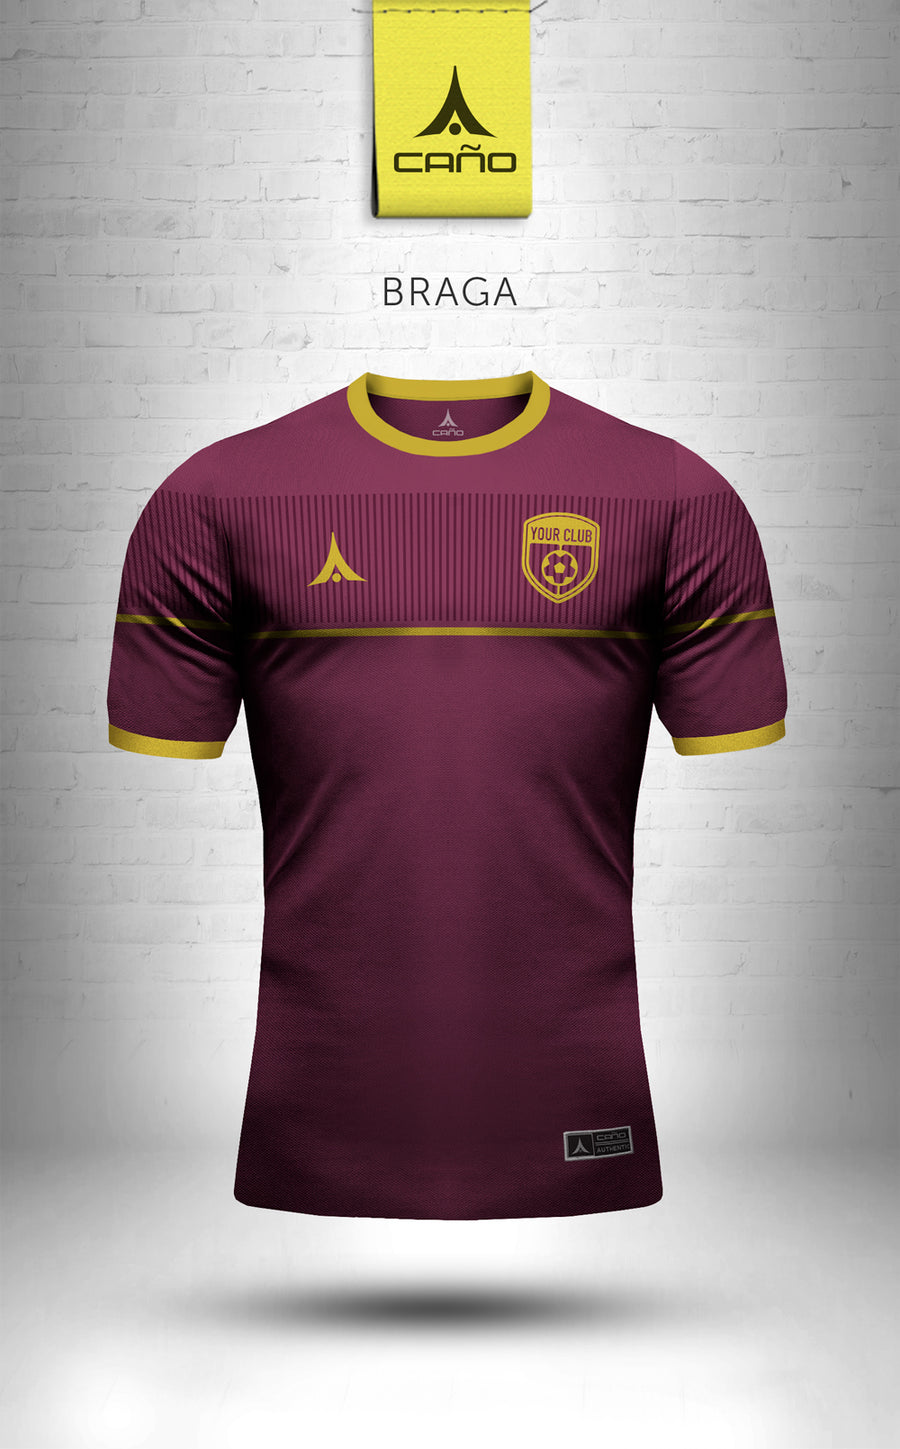 Braga in maroon/gold